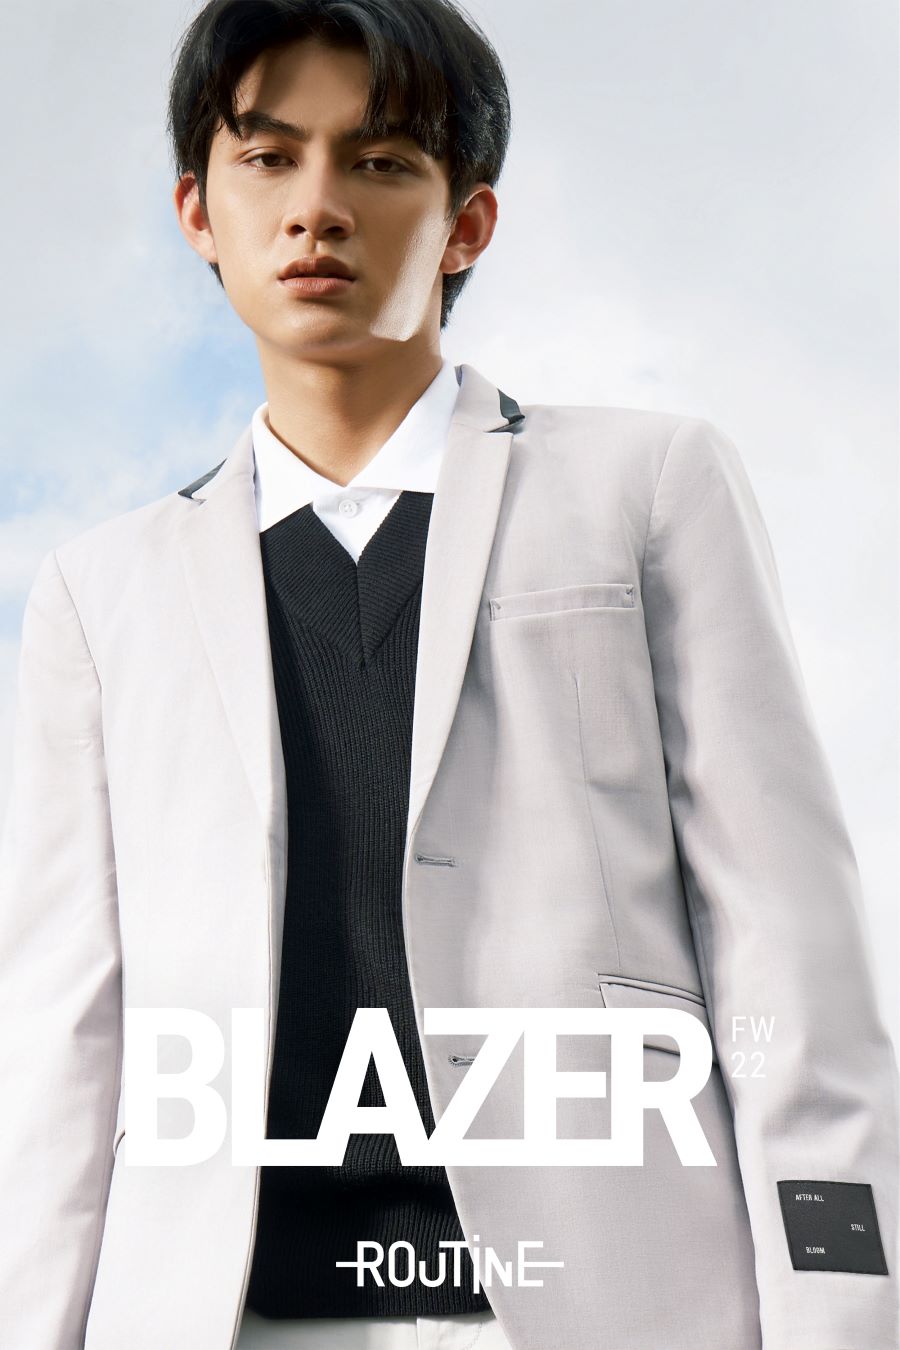 Blazer Phối Cổ là sản phẩm chân ái dành cho những bạn nam cá tính, yêu thích những gì độc - đẹp - lạ